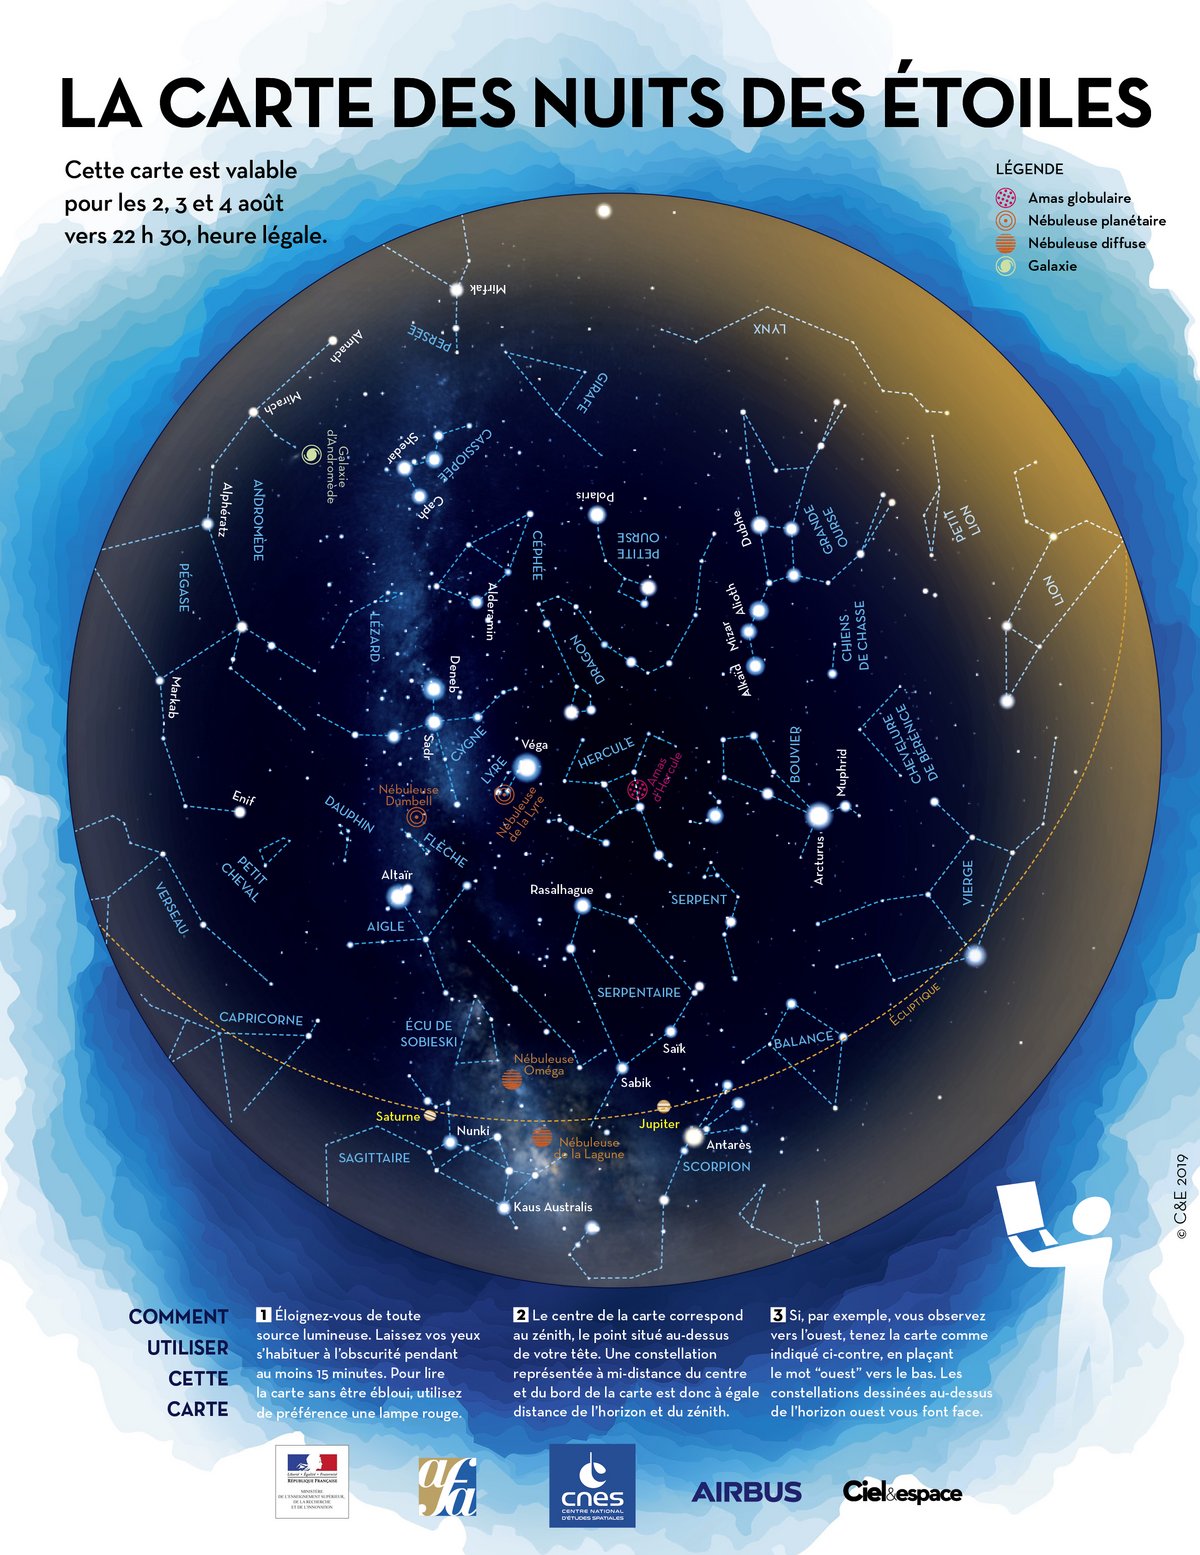 La carte des nuits des étoiles 2019